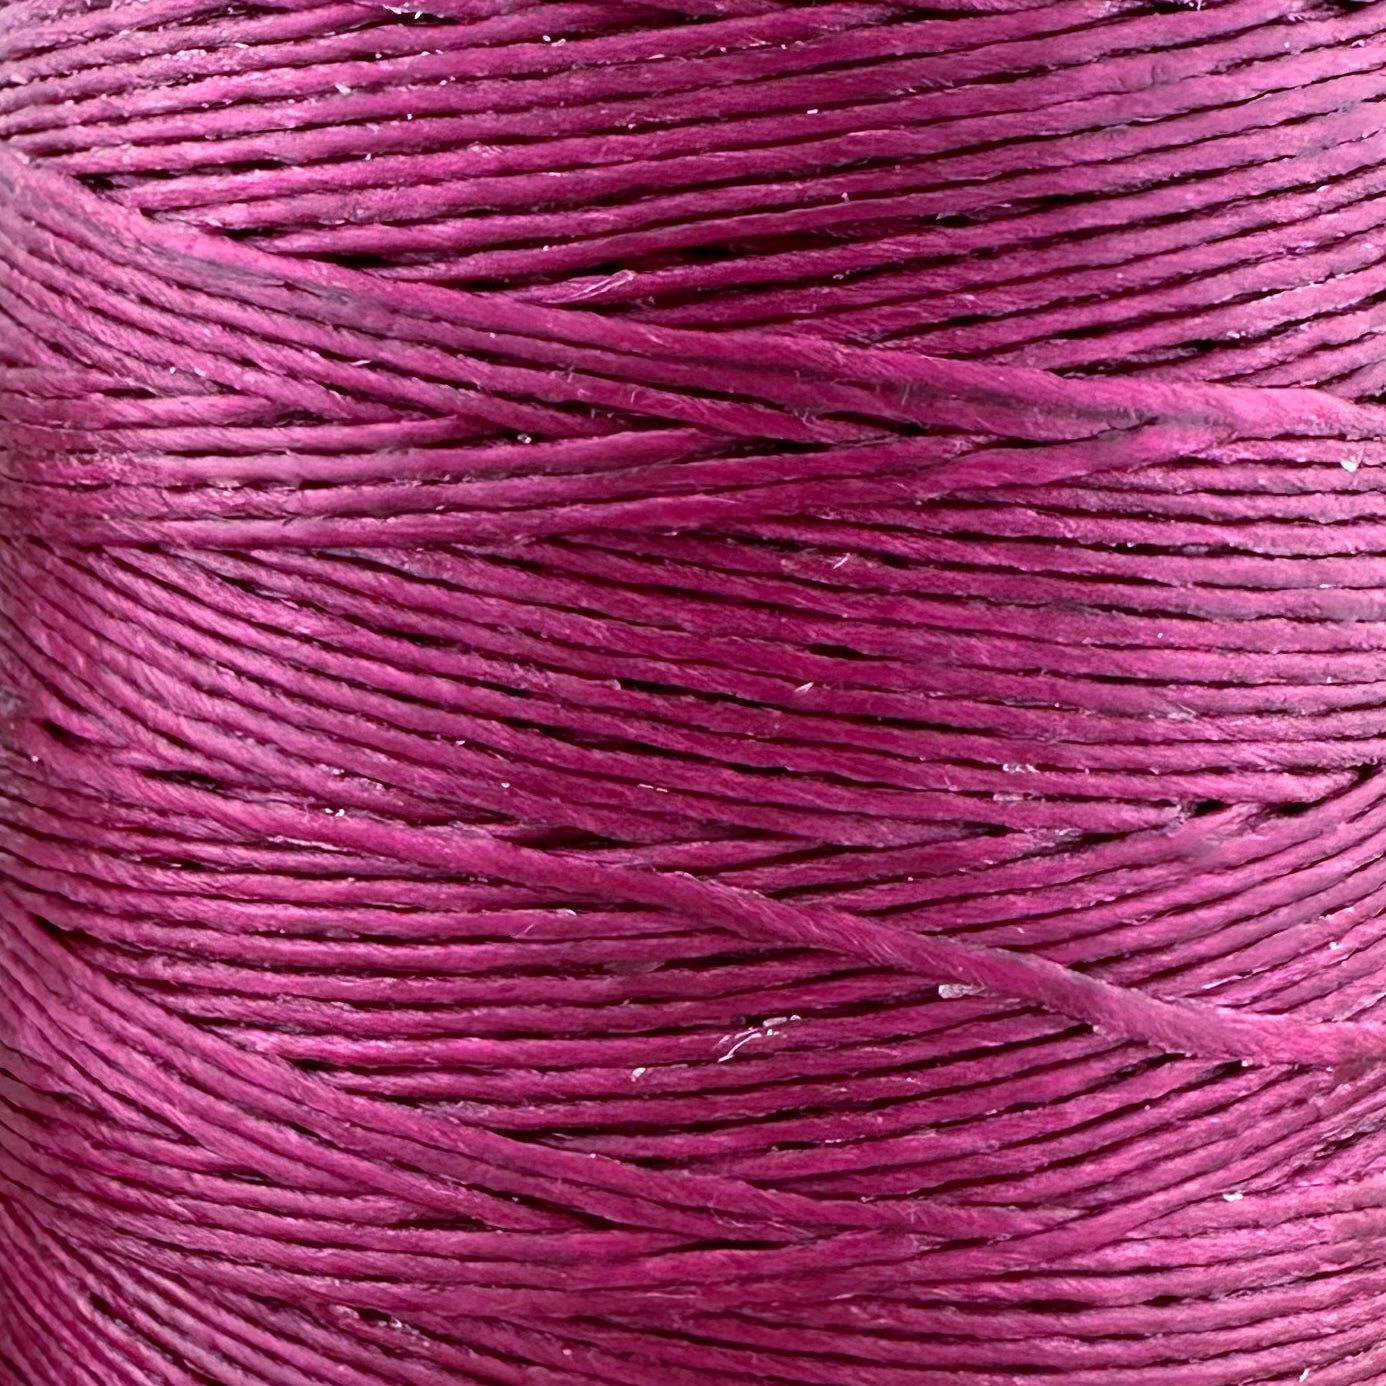 600 Meter Macrame Cord Spool - Dark Gypsy Pink